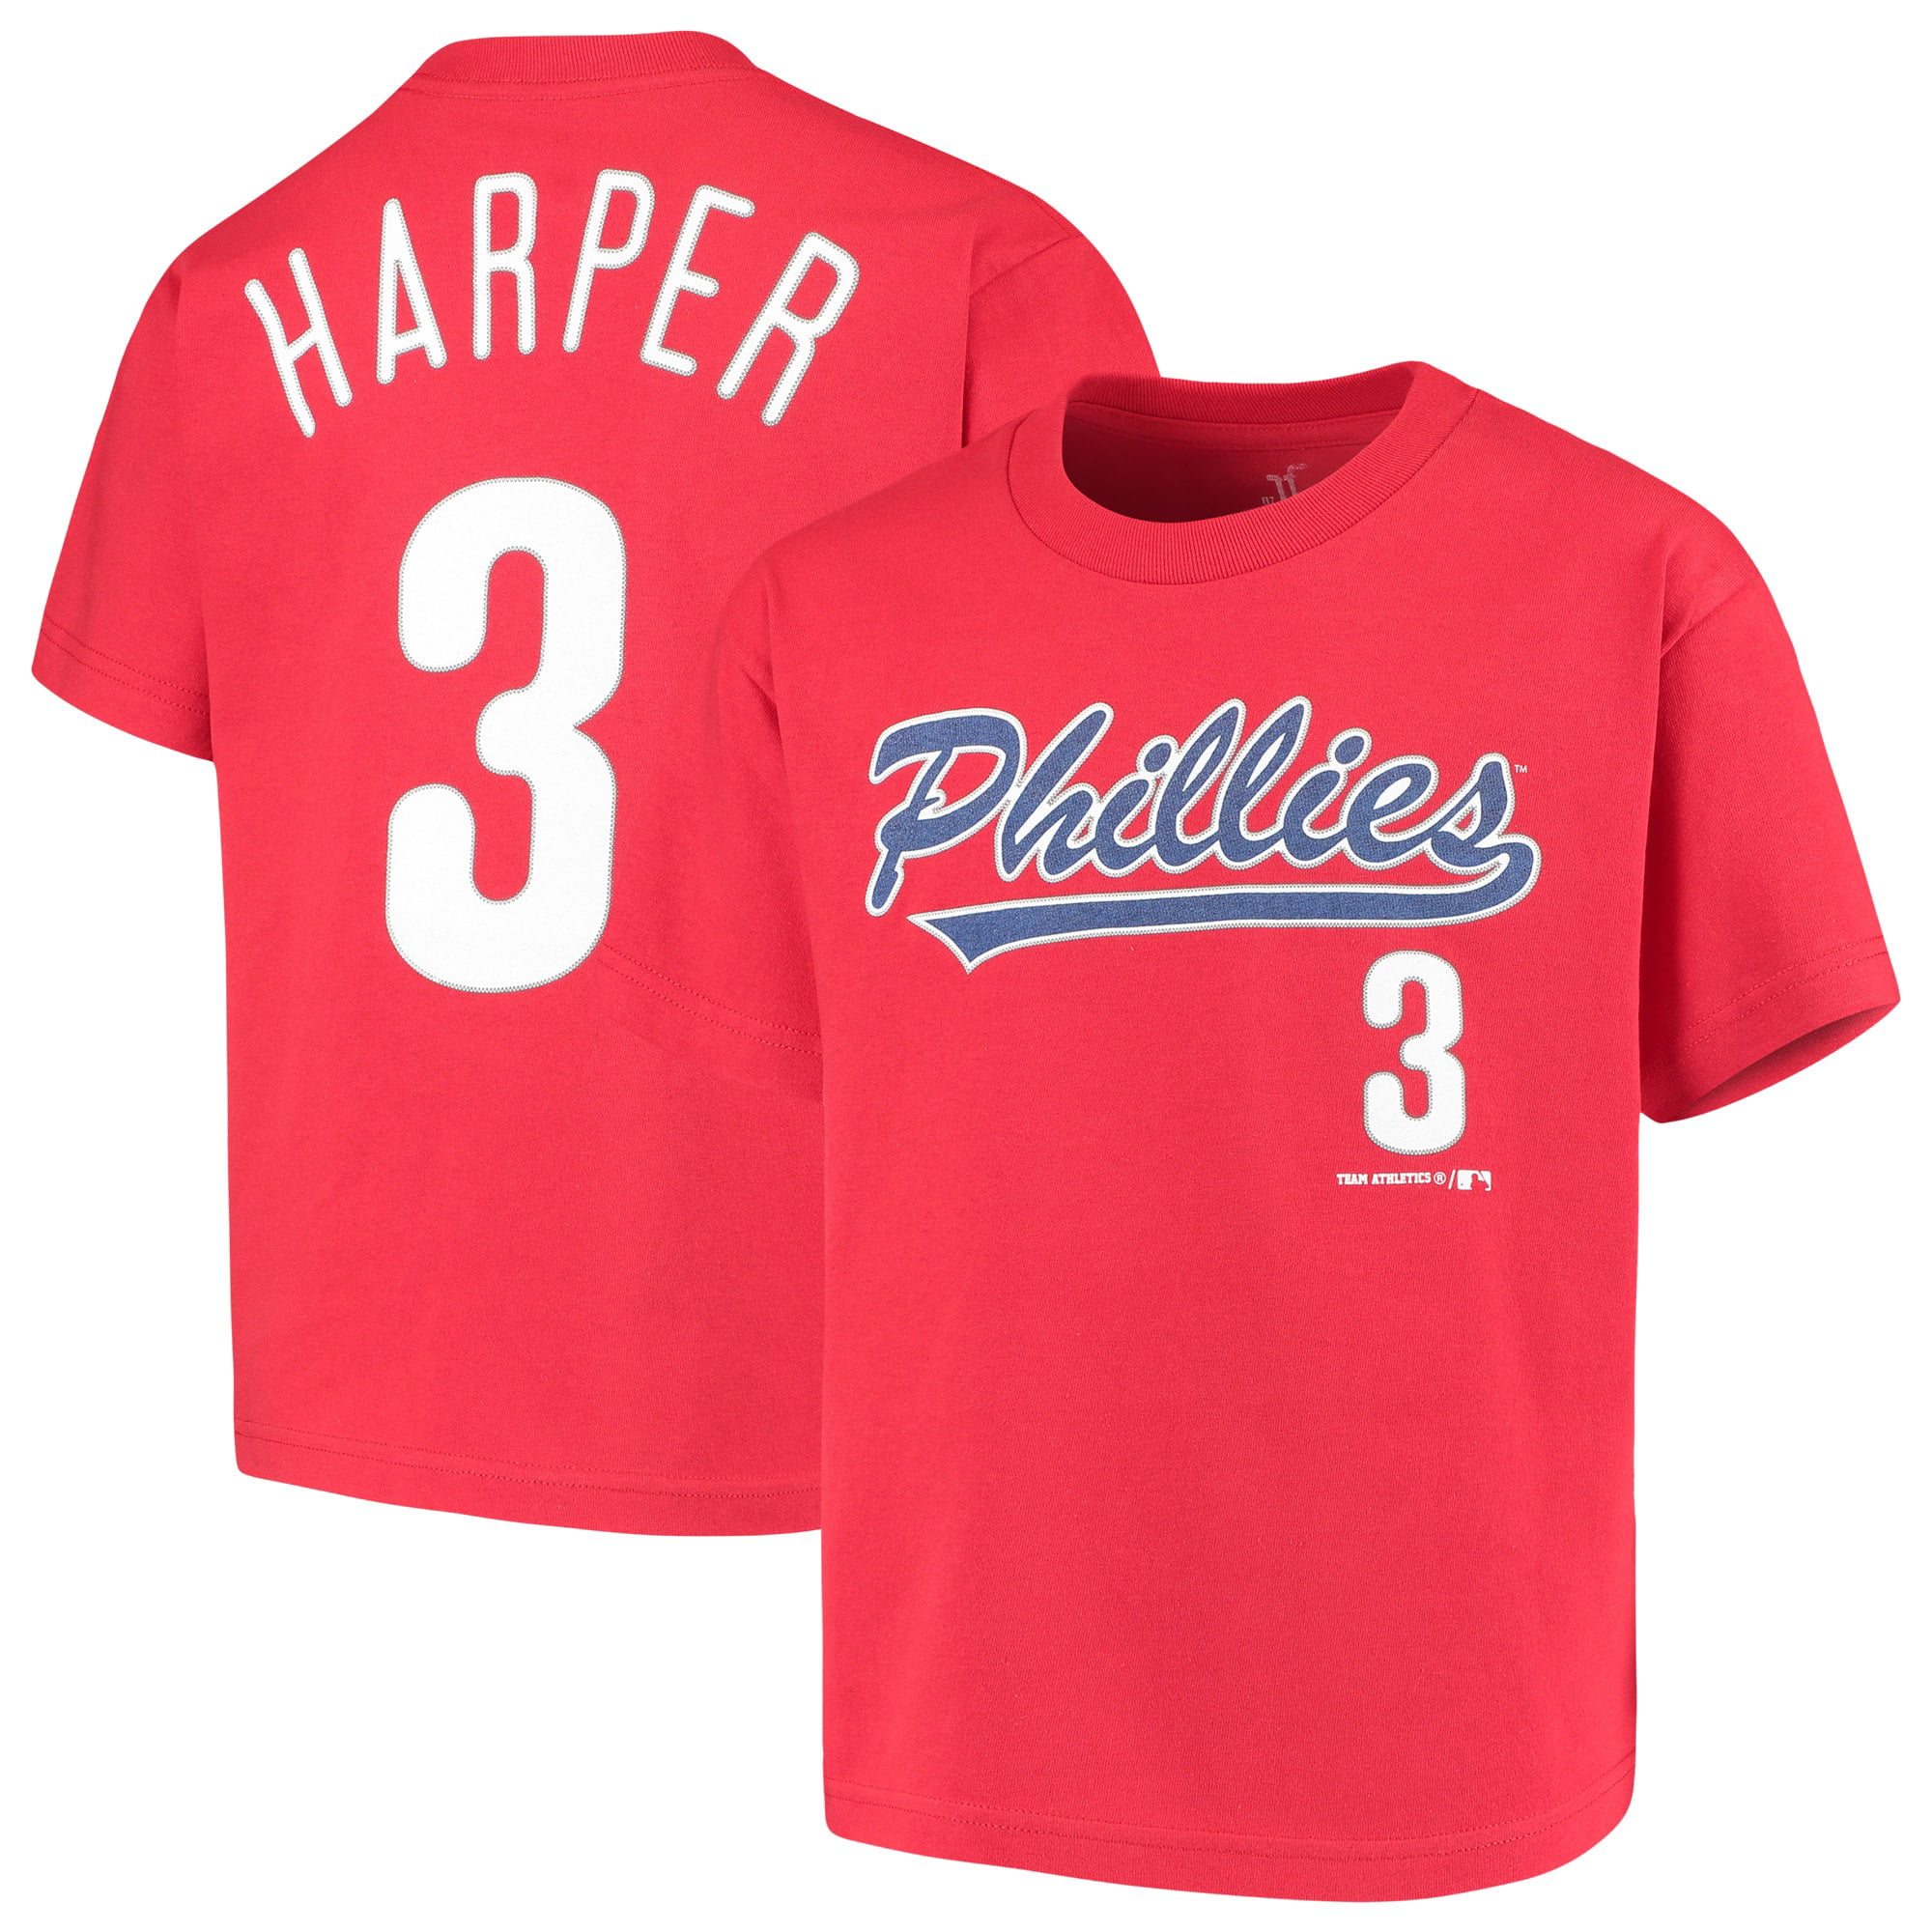 Phillies # 3 Harper Embroidered Baseball Jersey Fan Version Uniform Best gift Mens baseball jersey 